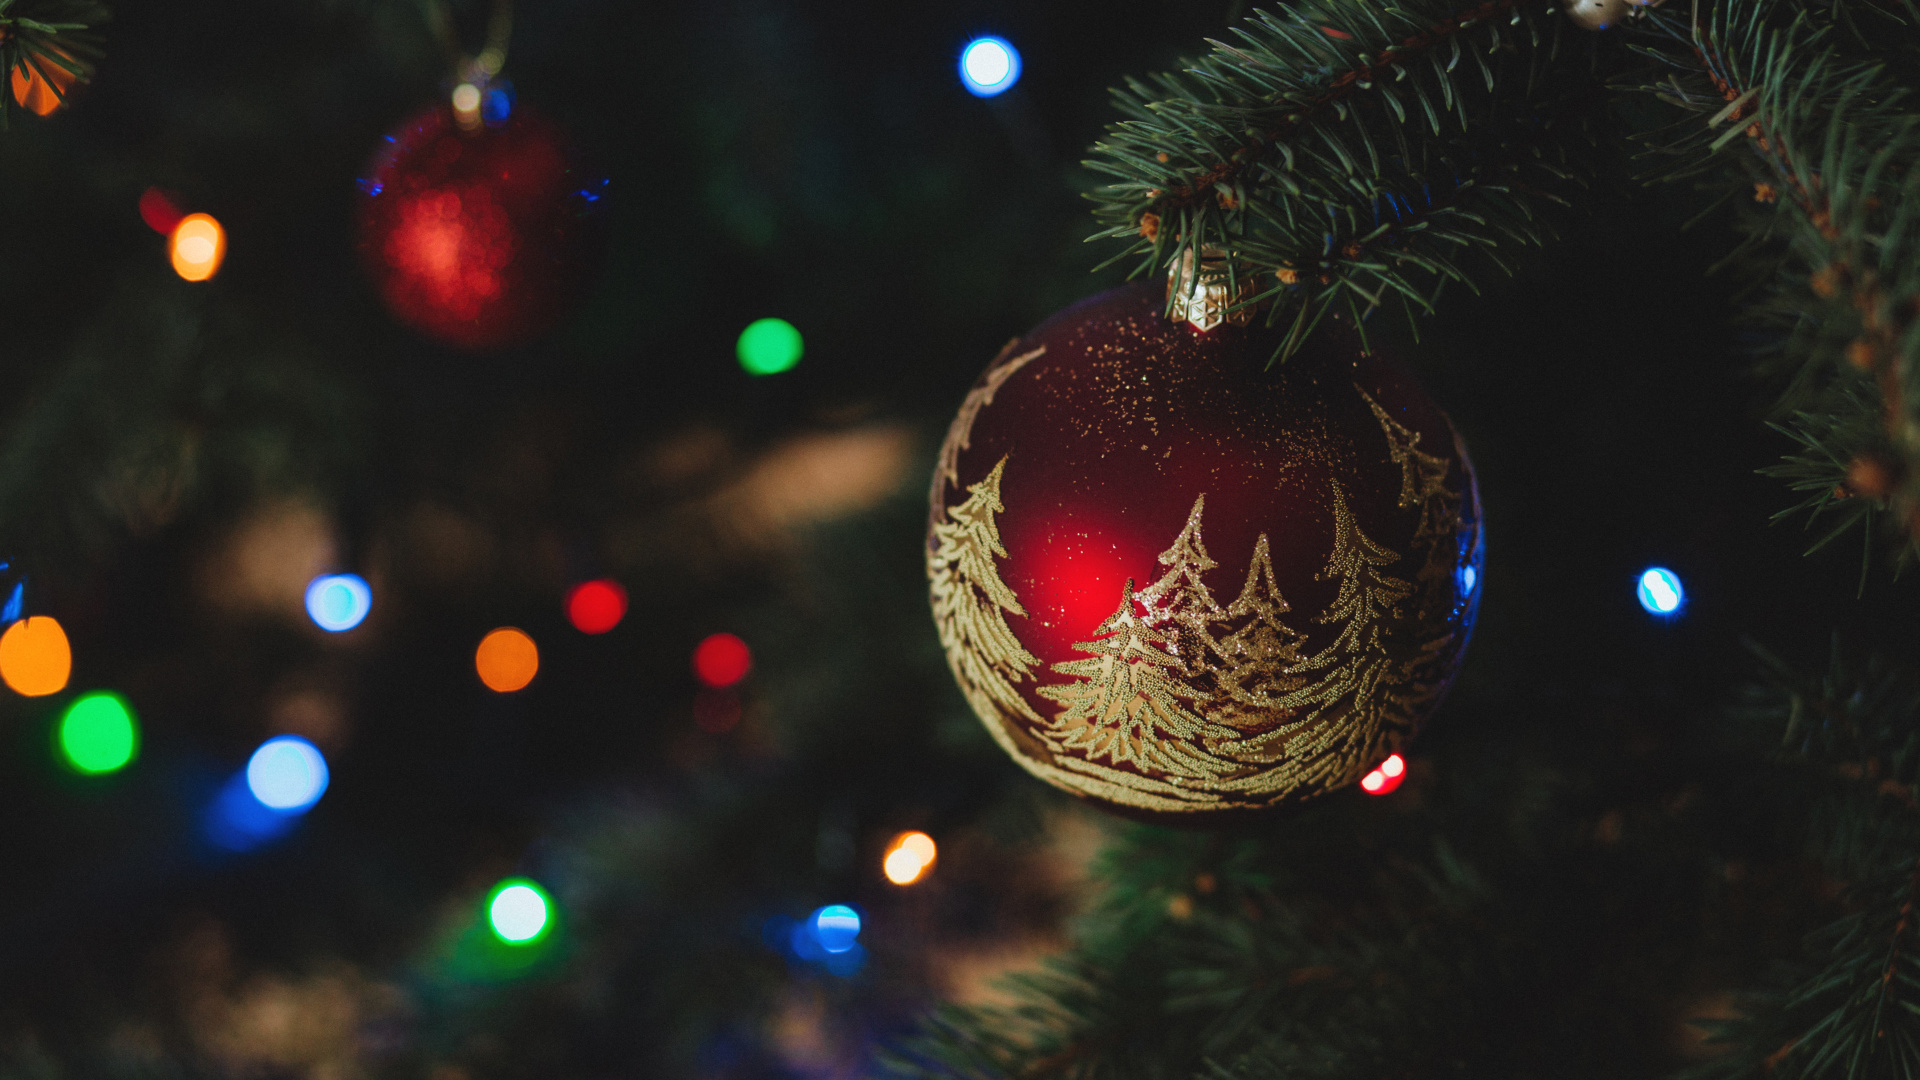 Weihnachten, Weihnachtsdekoration, Christmas Ornament, Weihnachtsbaum, Baum. Wallpaper in 1920x1080 Resolution